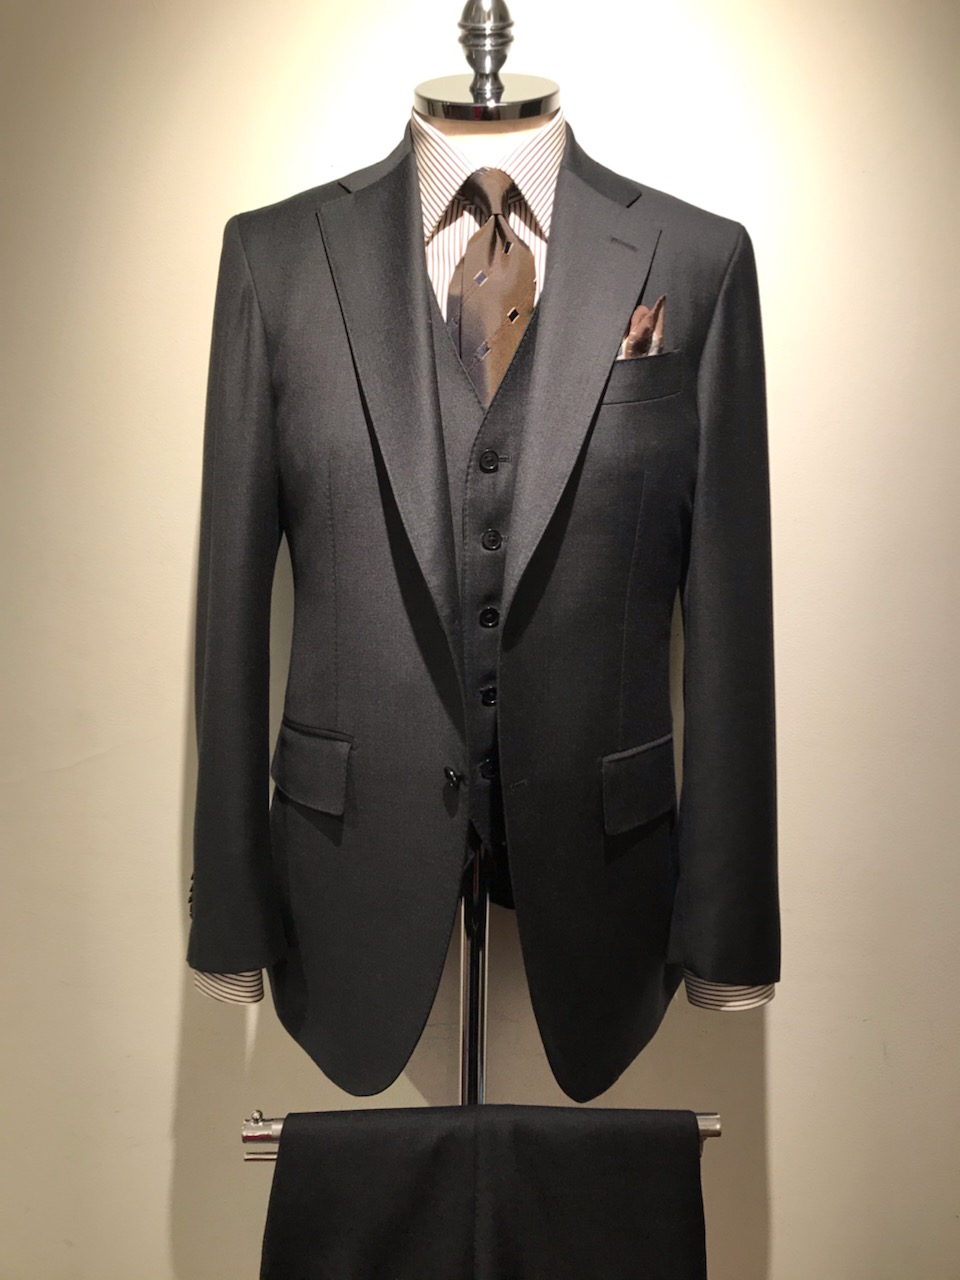 今作りたいスーツ – 日本橋店